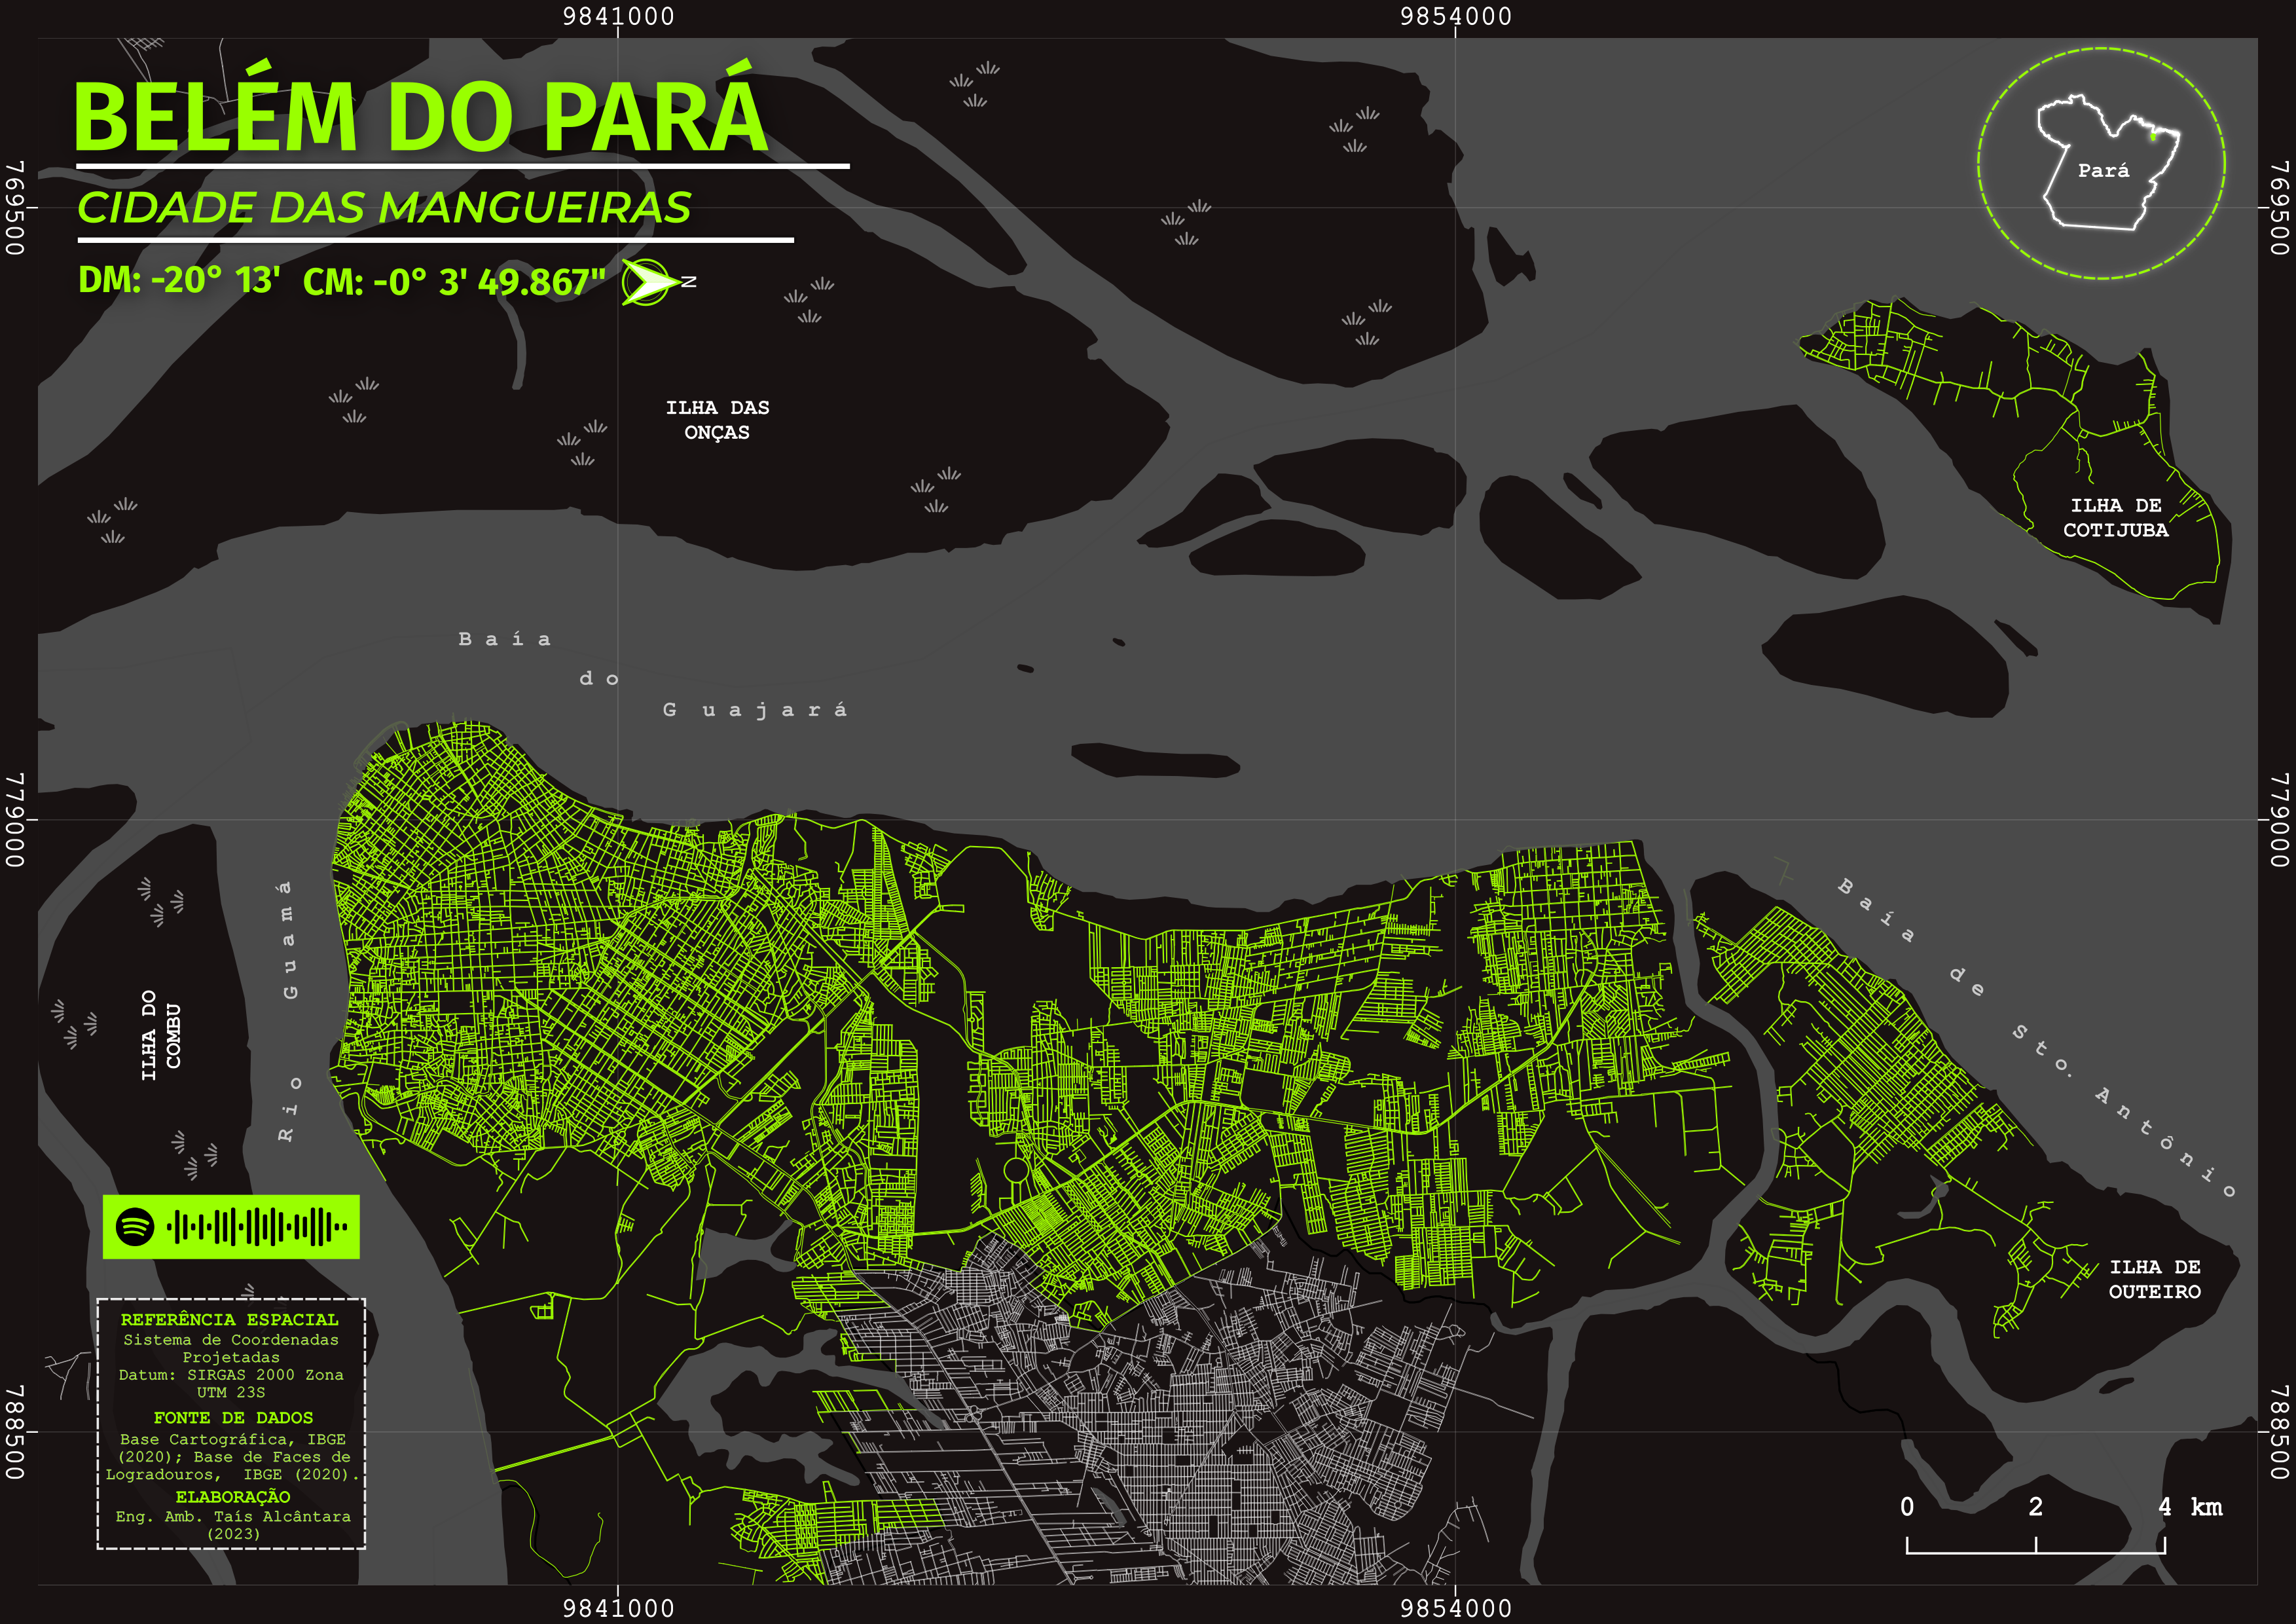 Mapa artístico - Belém do Pará, Brasil